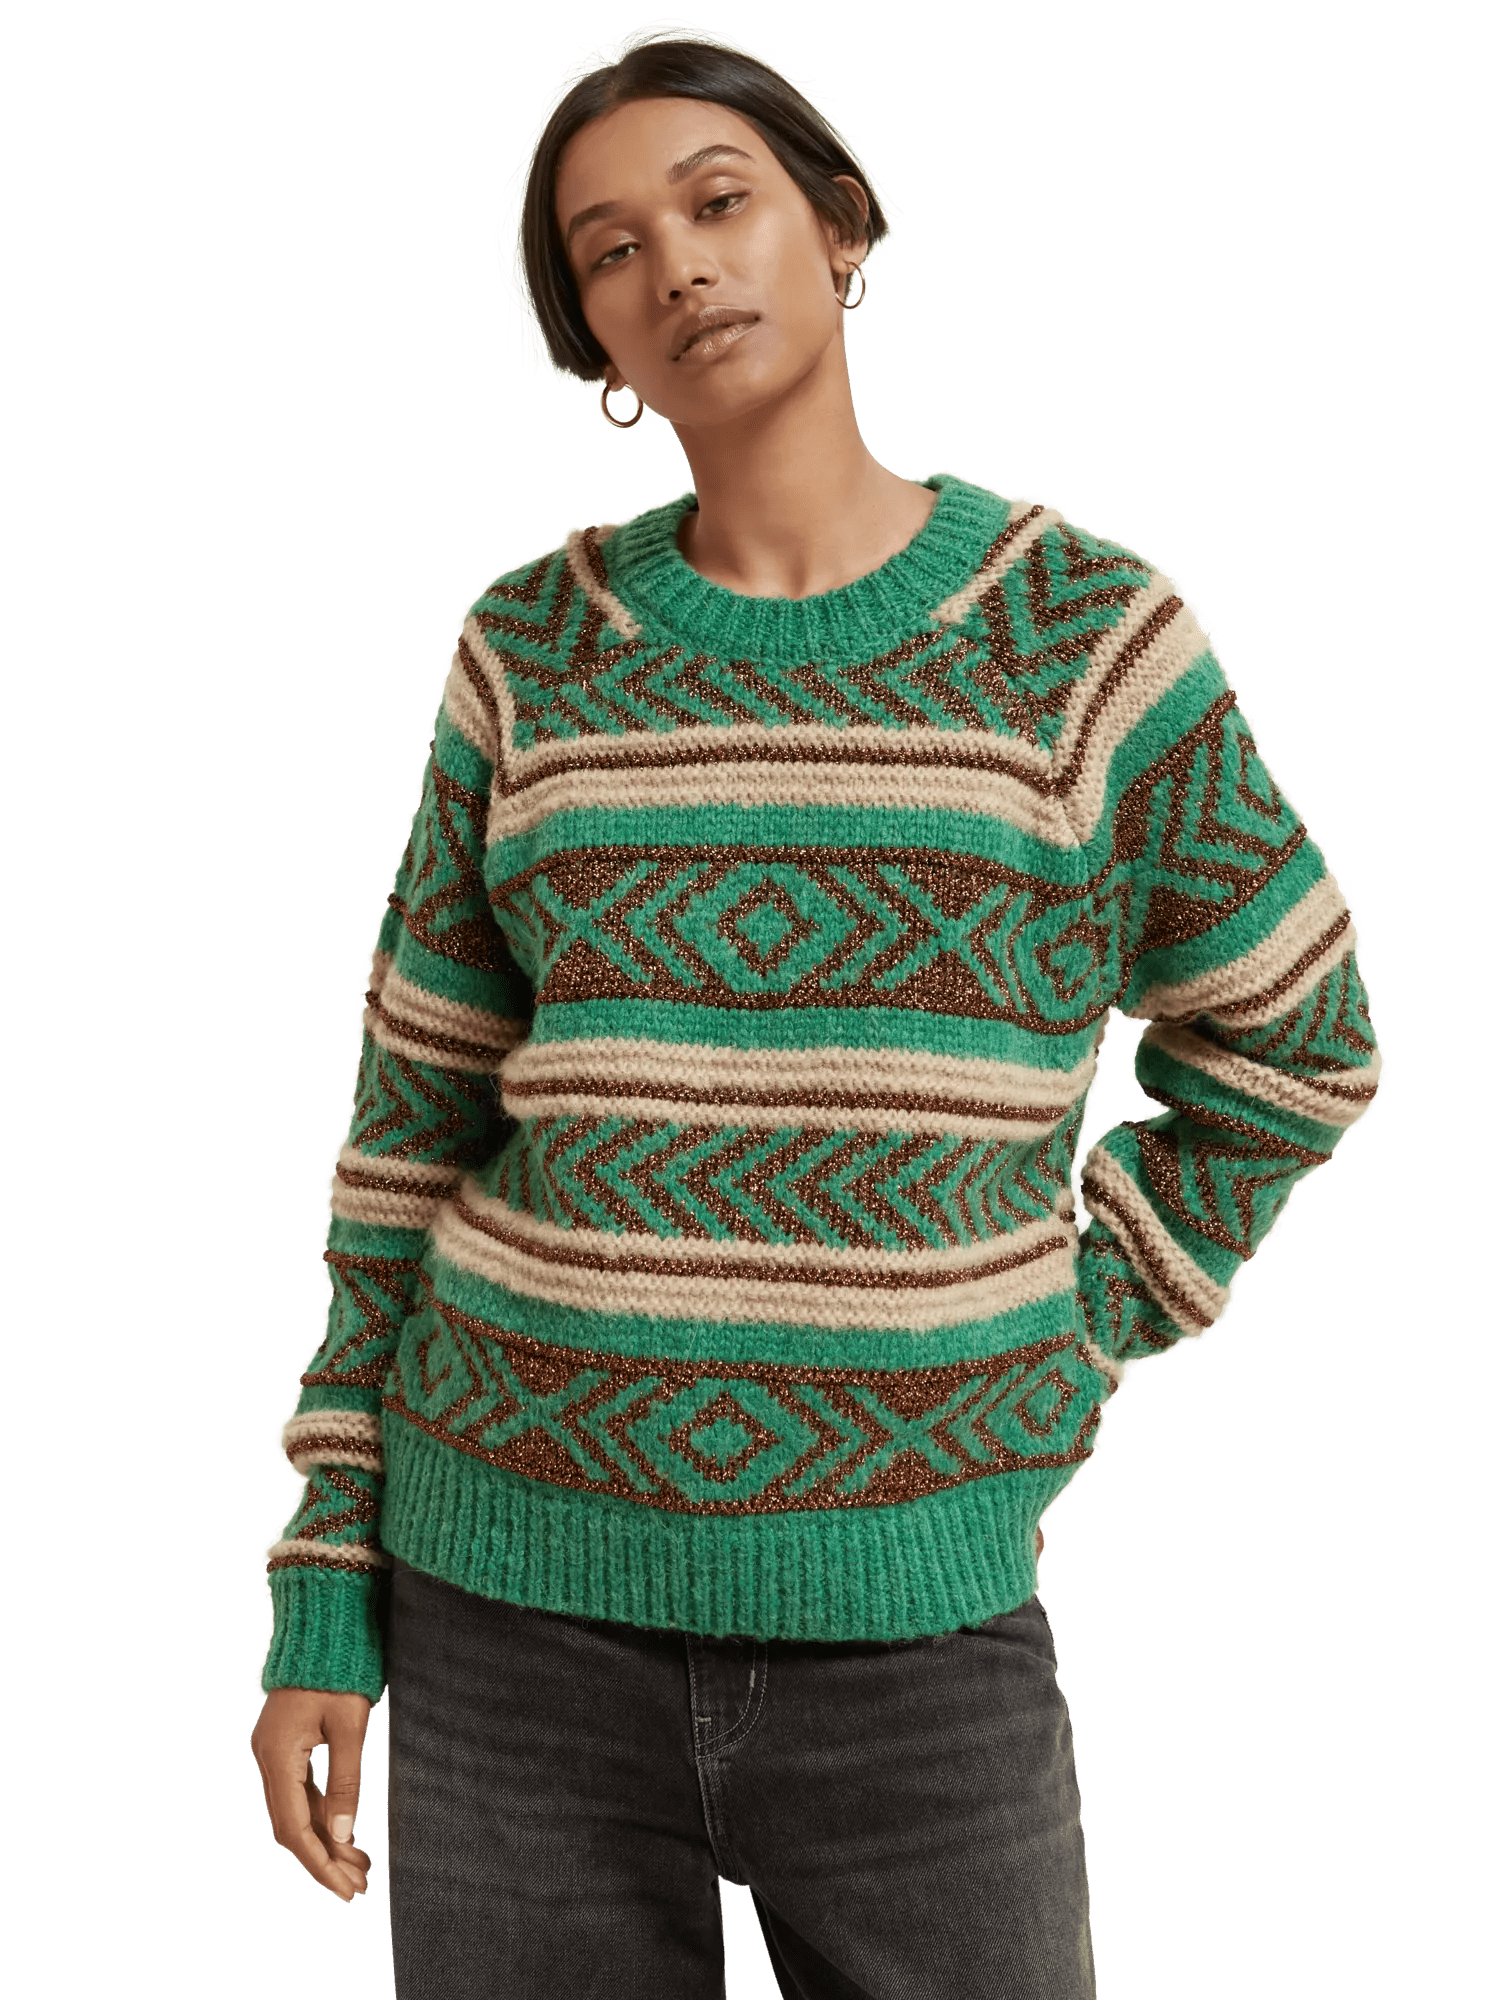 Metallic fair isle sweater